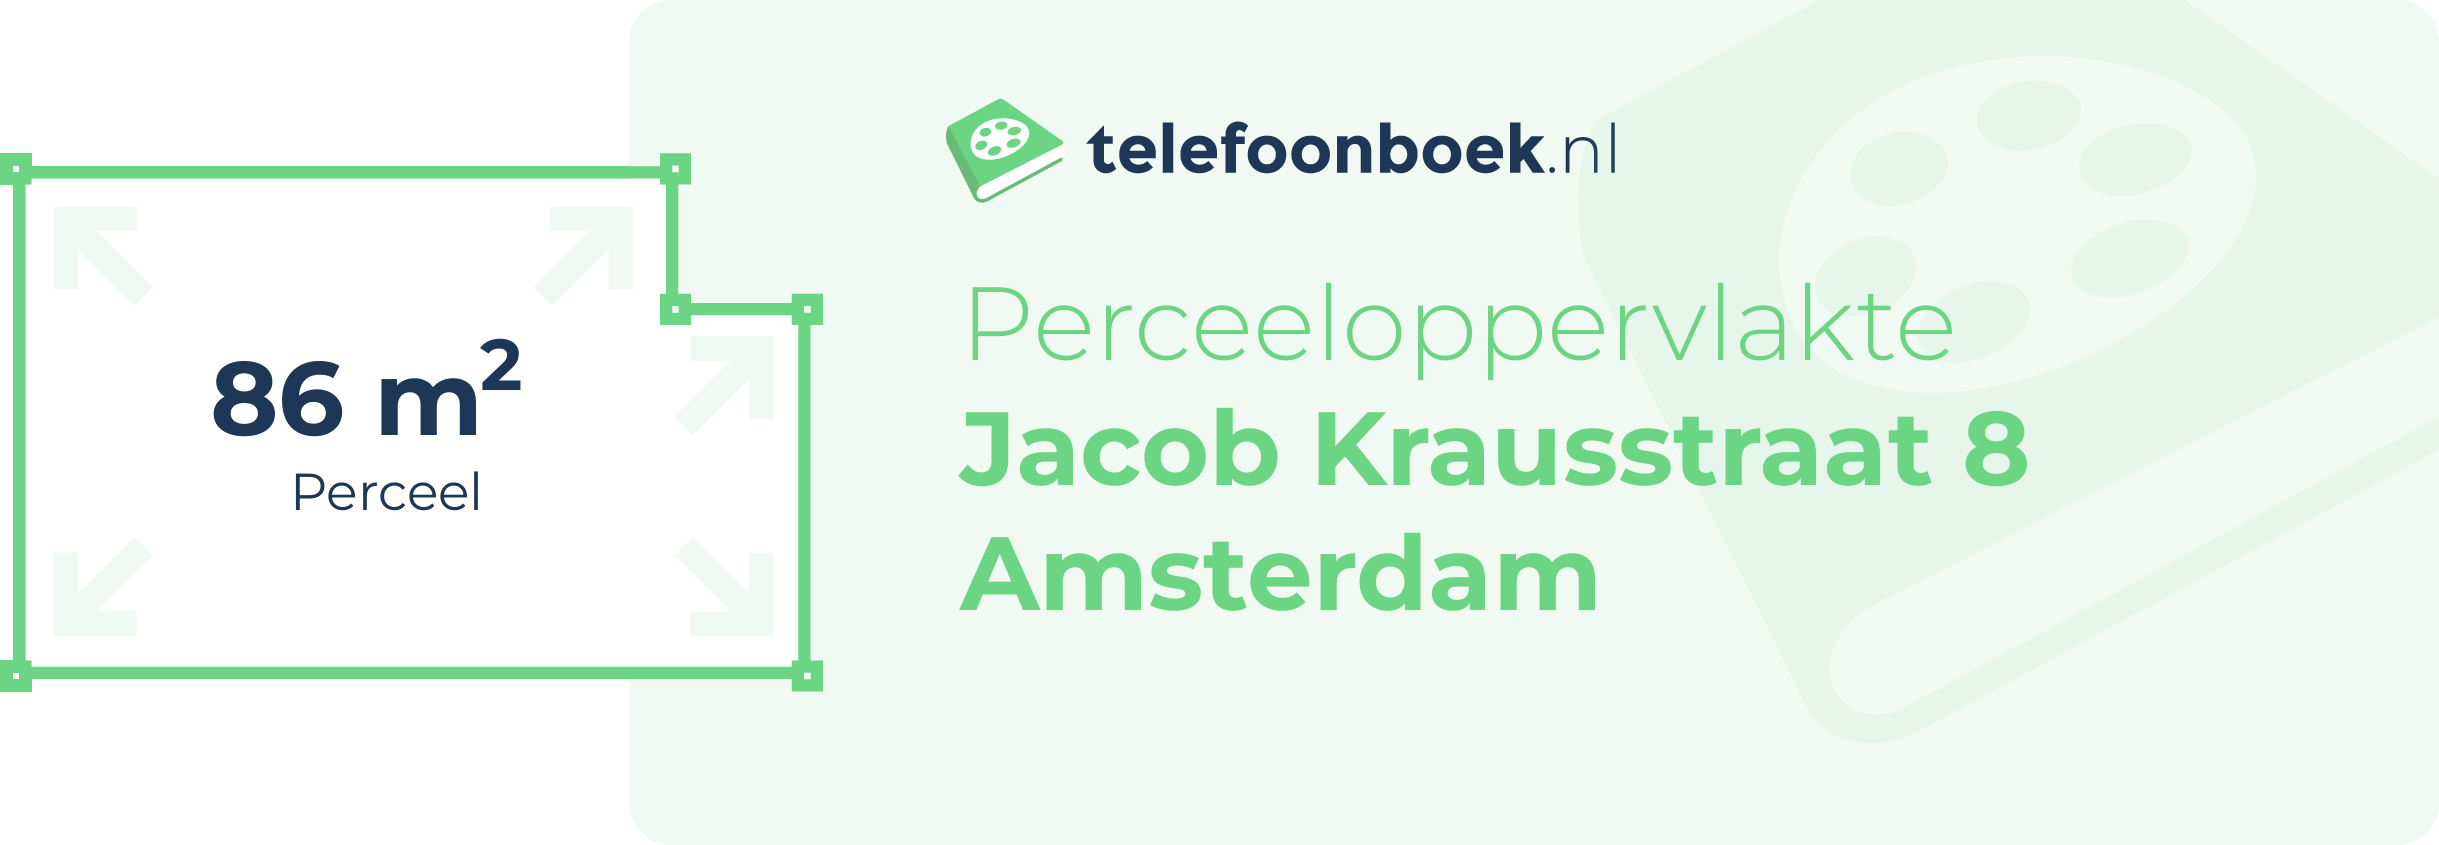 Perceeloppervlakte Jacob Krausstraat 8 Amsterdam